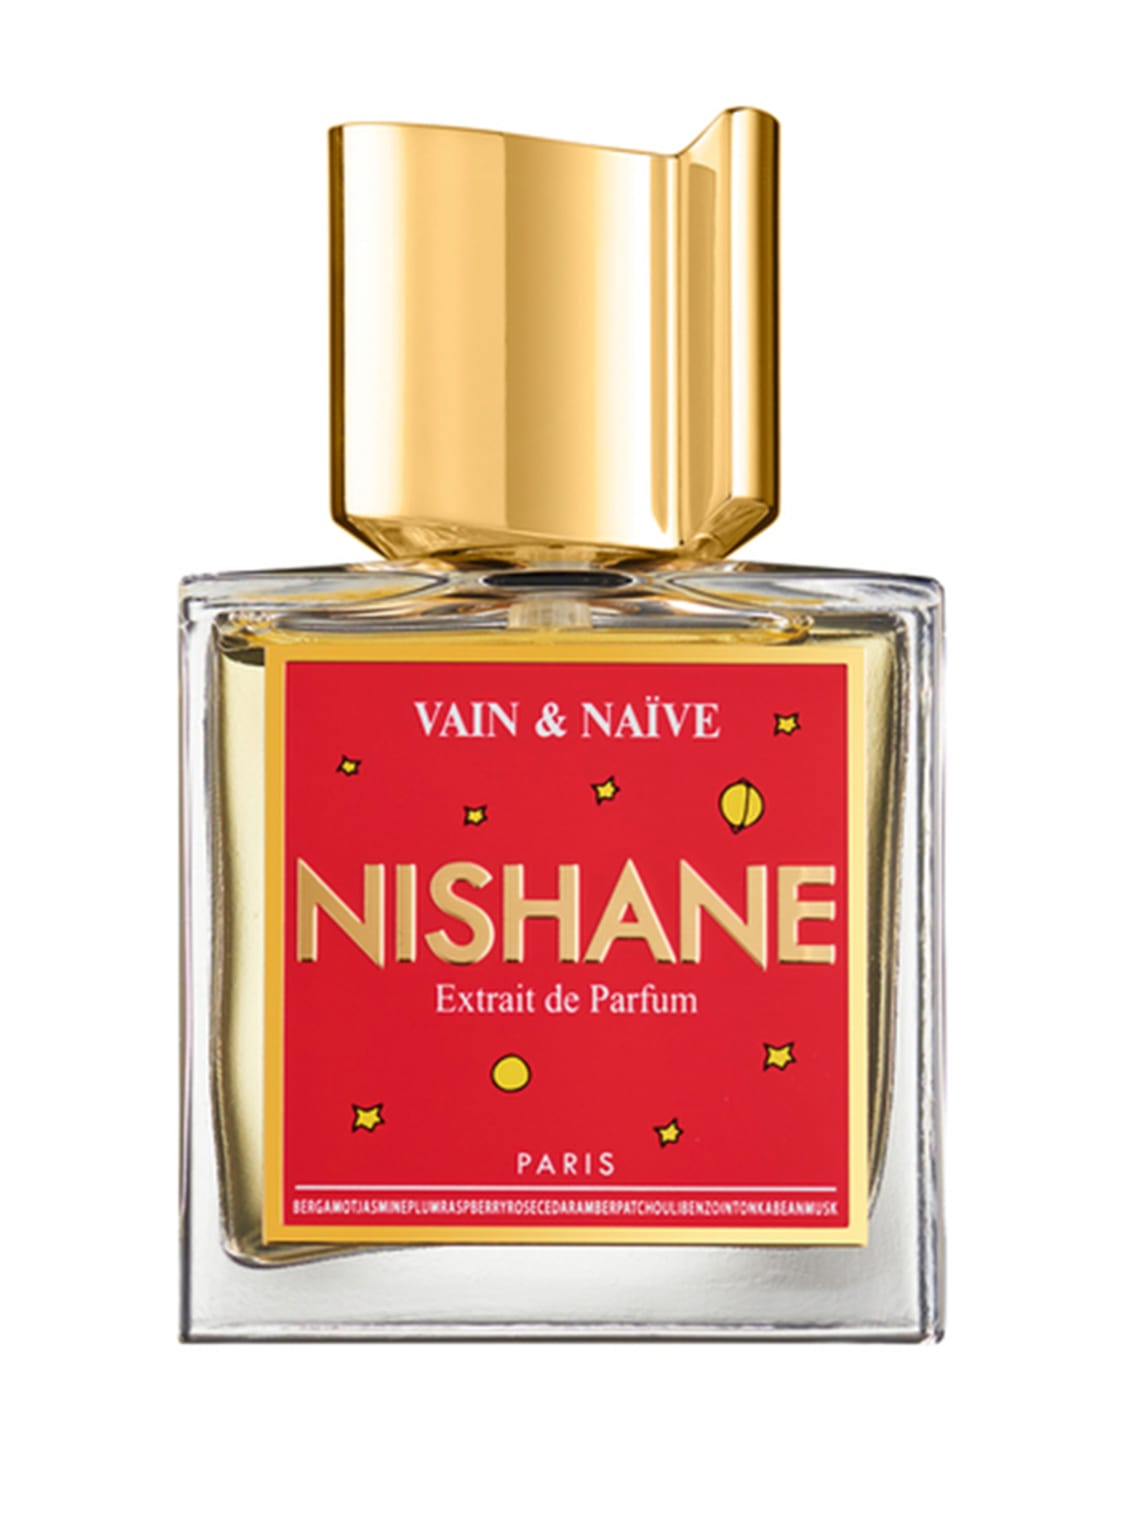 Nishane Vain & Naïve Extrait de Parfum 50 ml von NISHANE